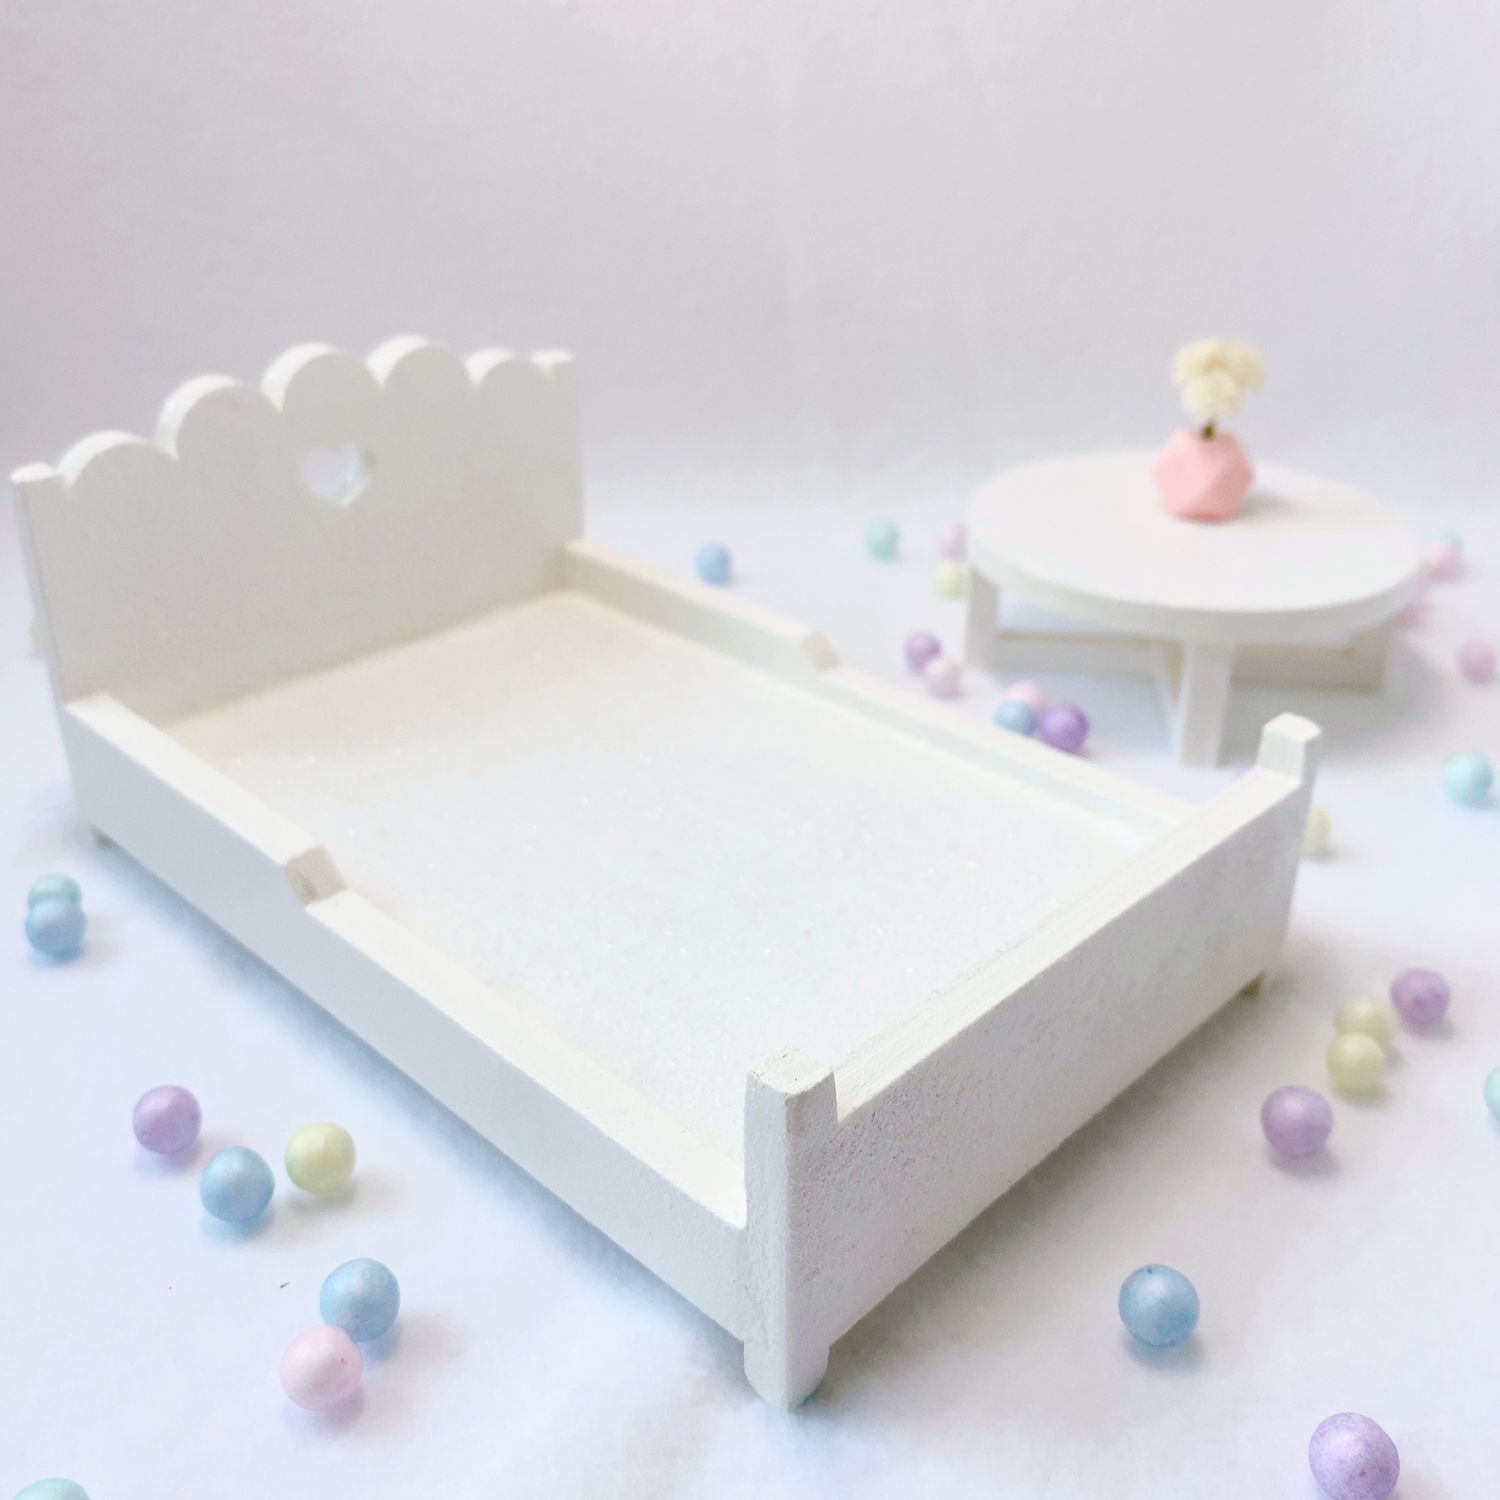 Дизайн и интерьер детской комнаты в стиле ИКЕА